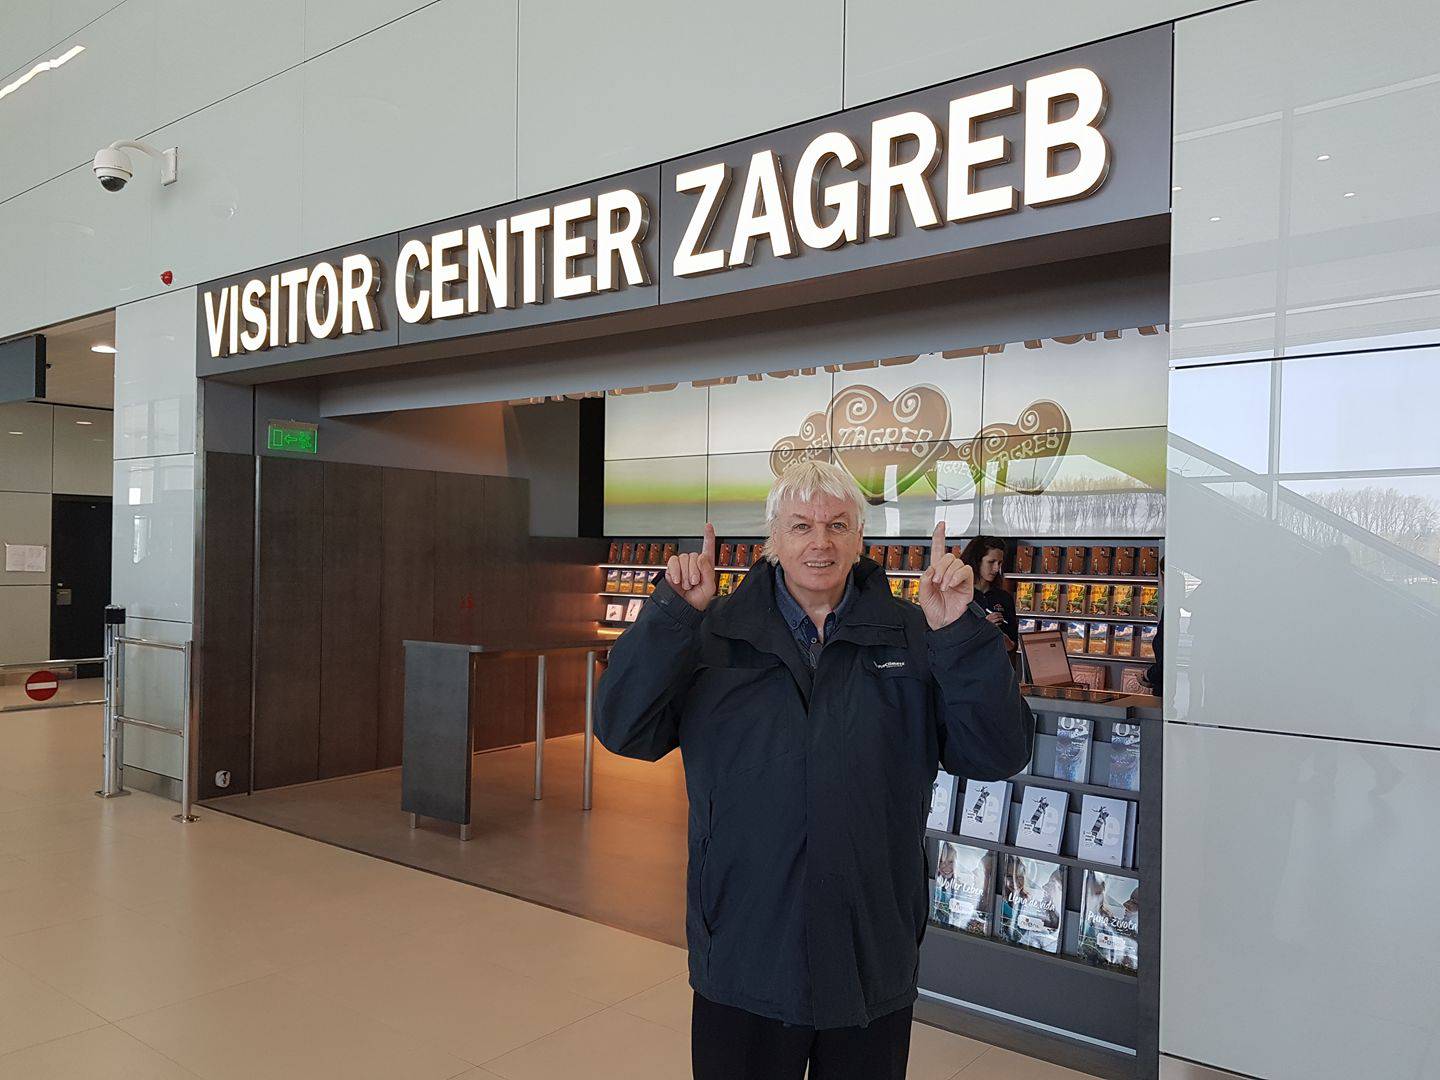 Teoretičar zavjera: David Icke stigao na zagrebački aerodrom